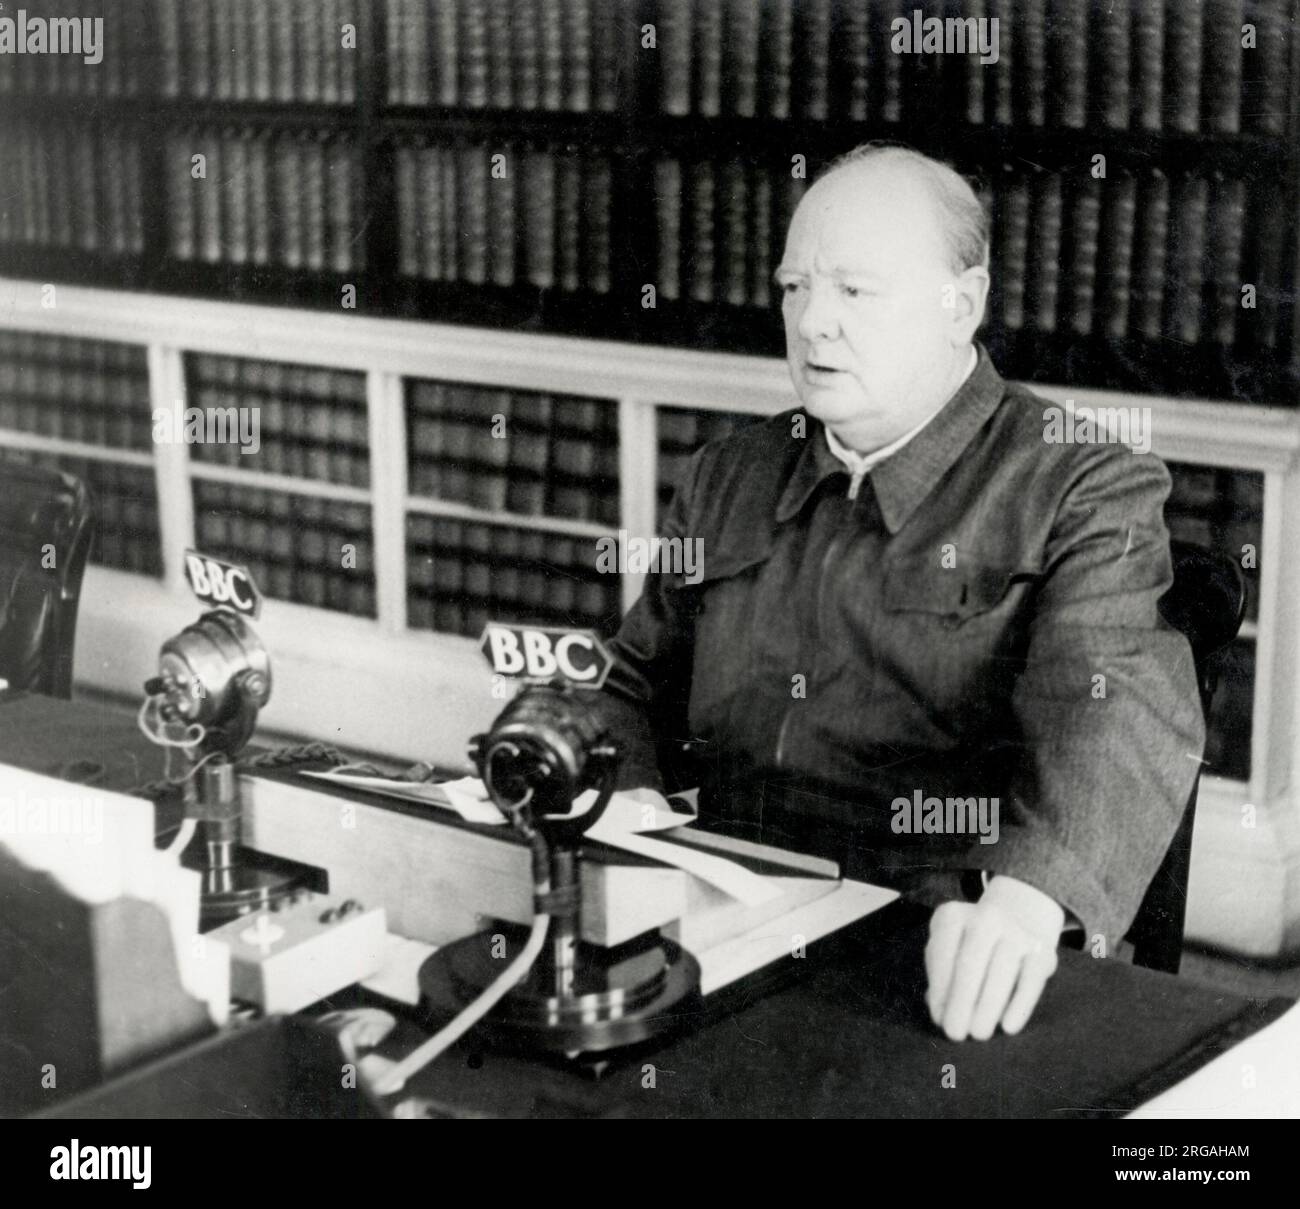 Der britische Premierminister Winston Churchill aus dem Zweiten Weltkrieg, Radiosendung auf der BBC, London. Stockfoto